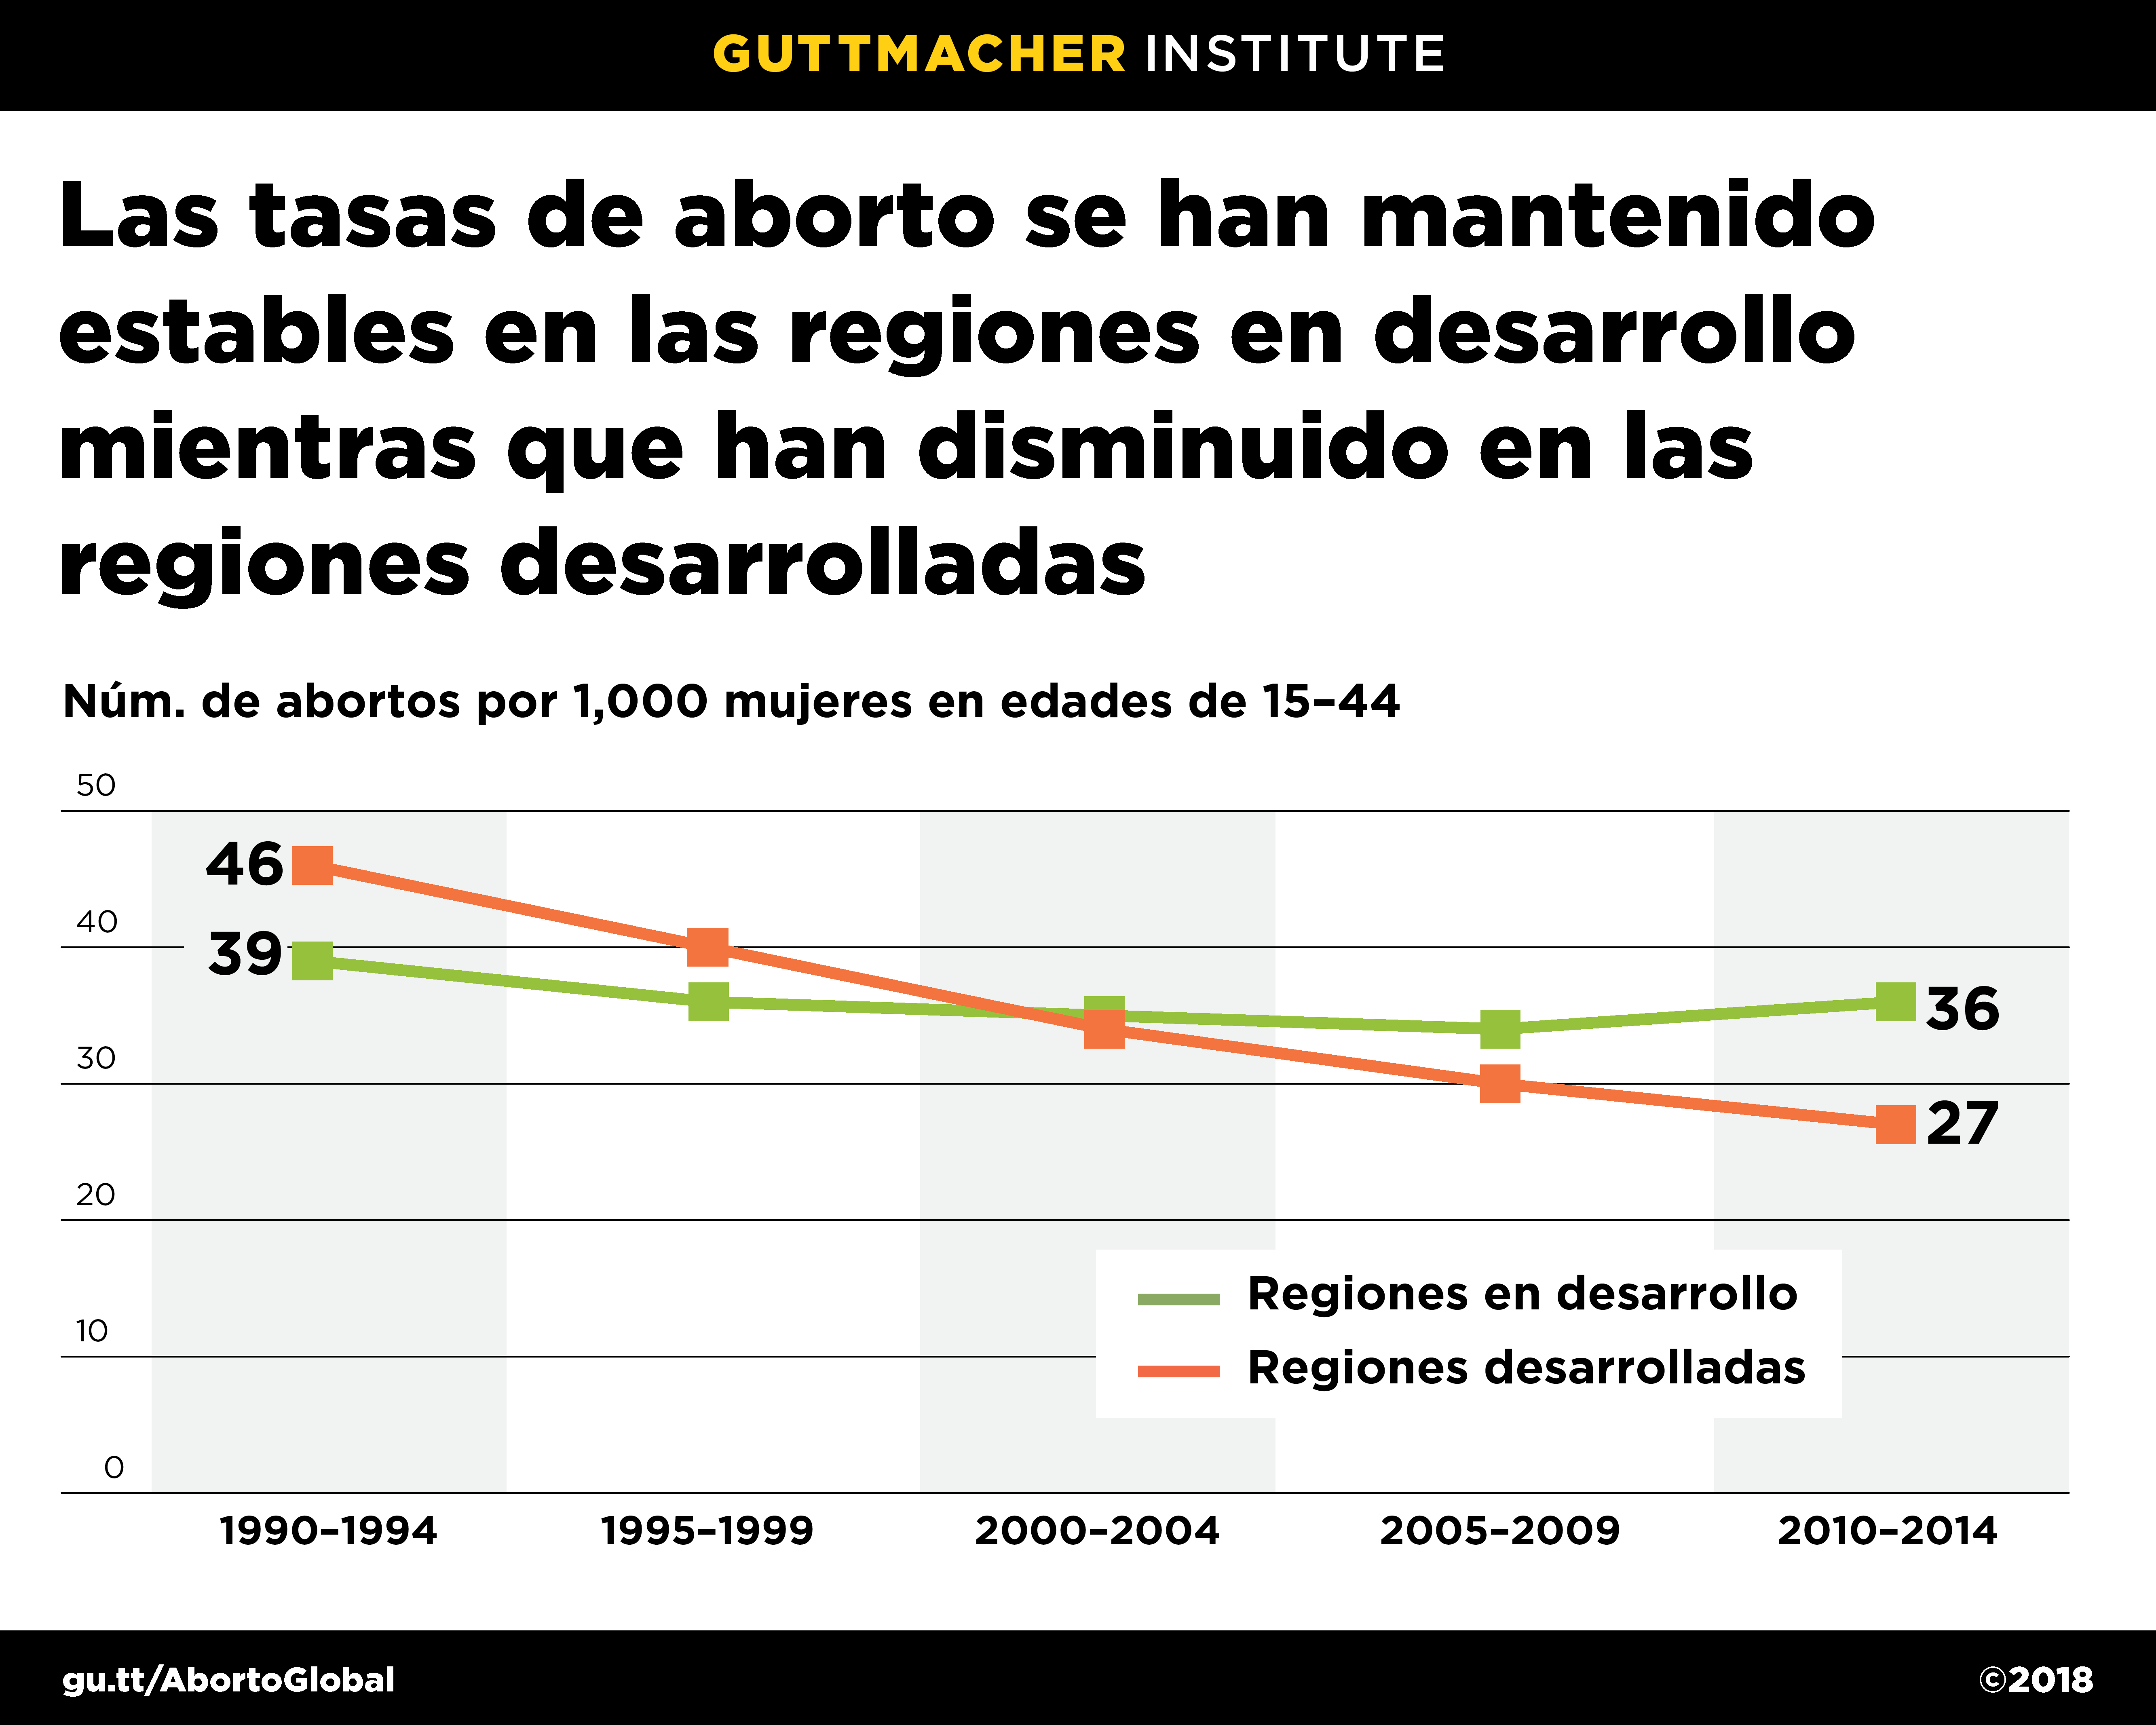 Las tasas de aborto se han mantenido estables en las regiones en desarrollo y han disminuido en las regiones desarrolladas